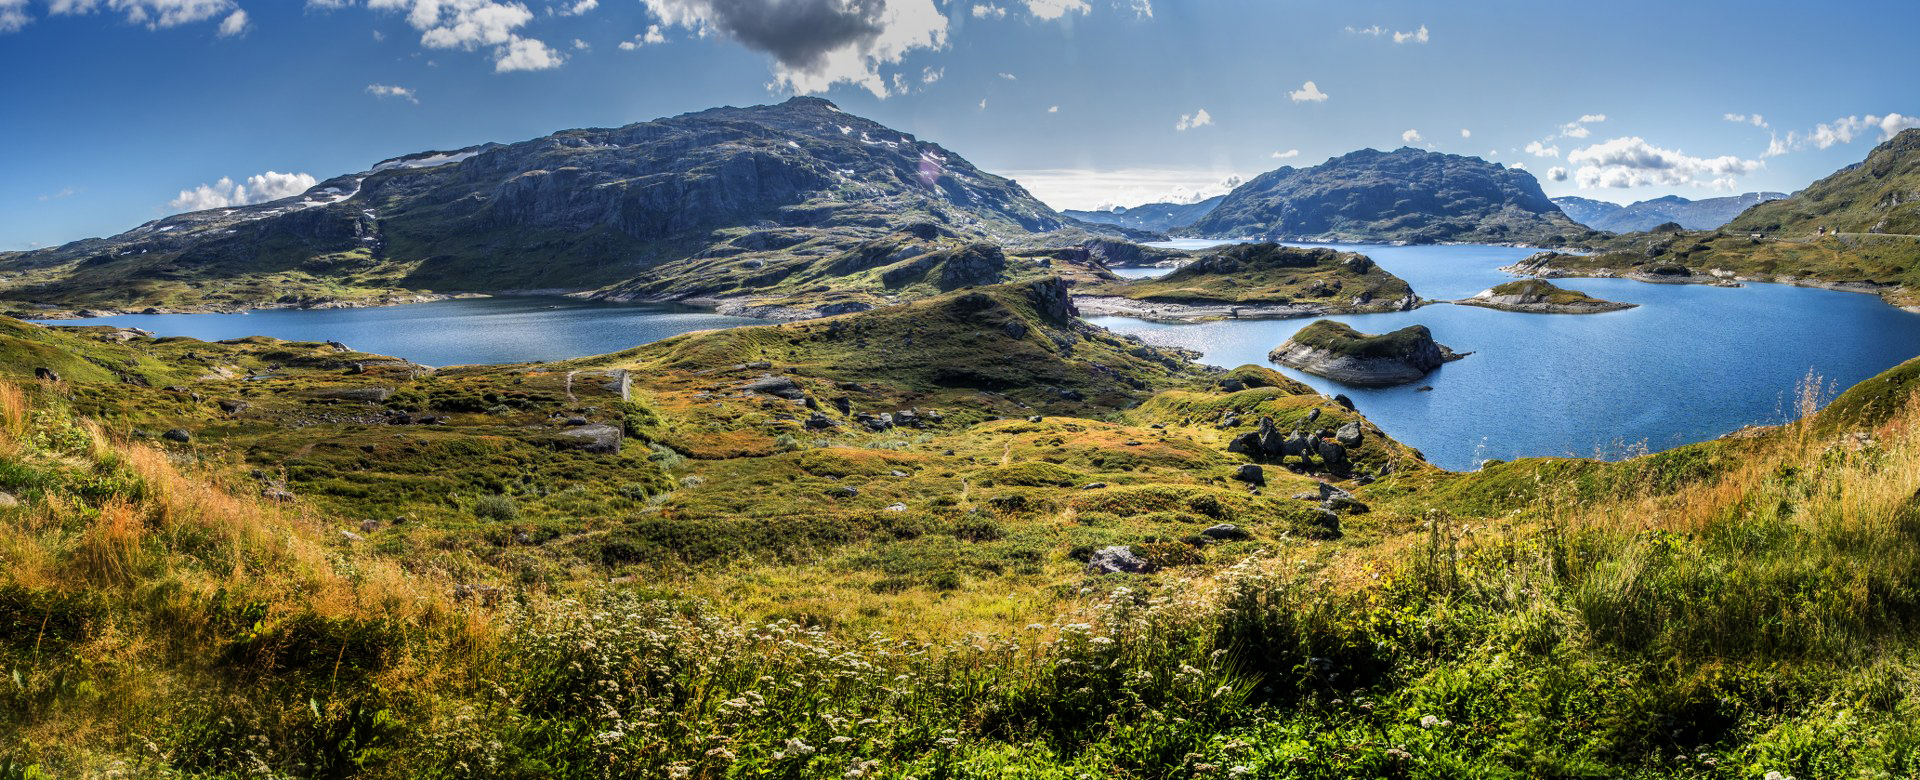 _8280227 panorama Noorwegen_1920x780